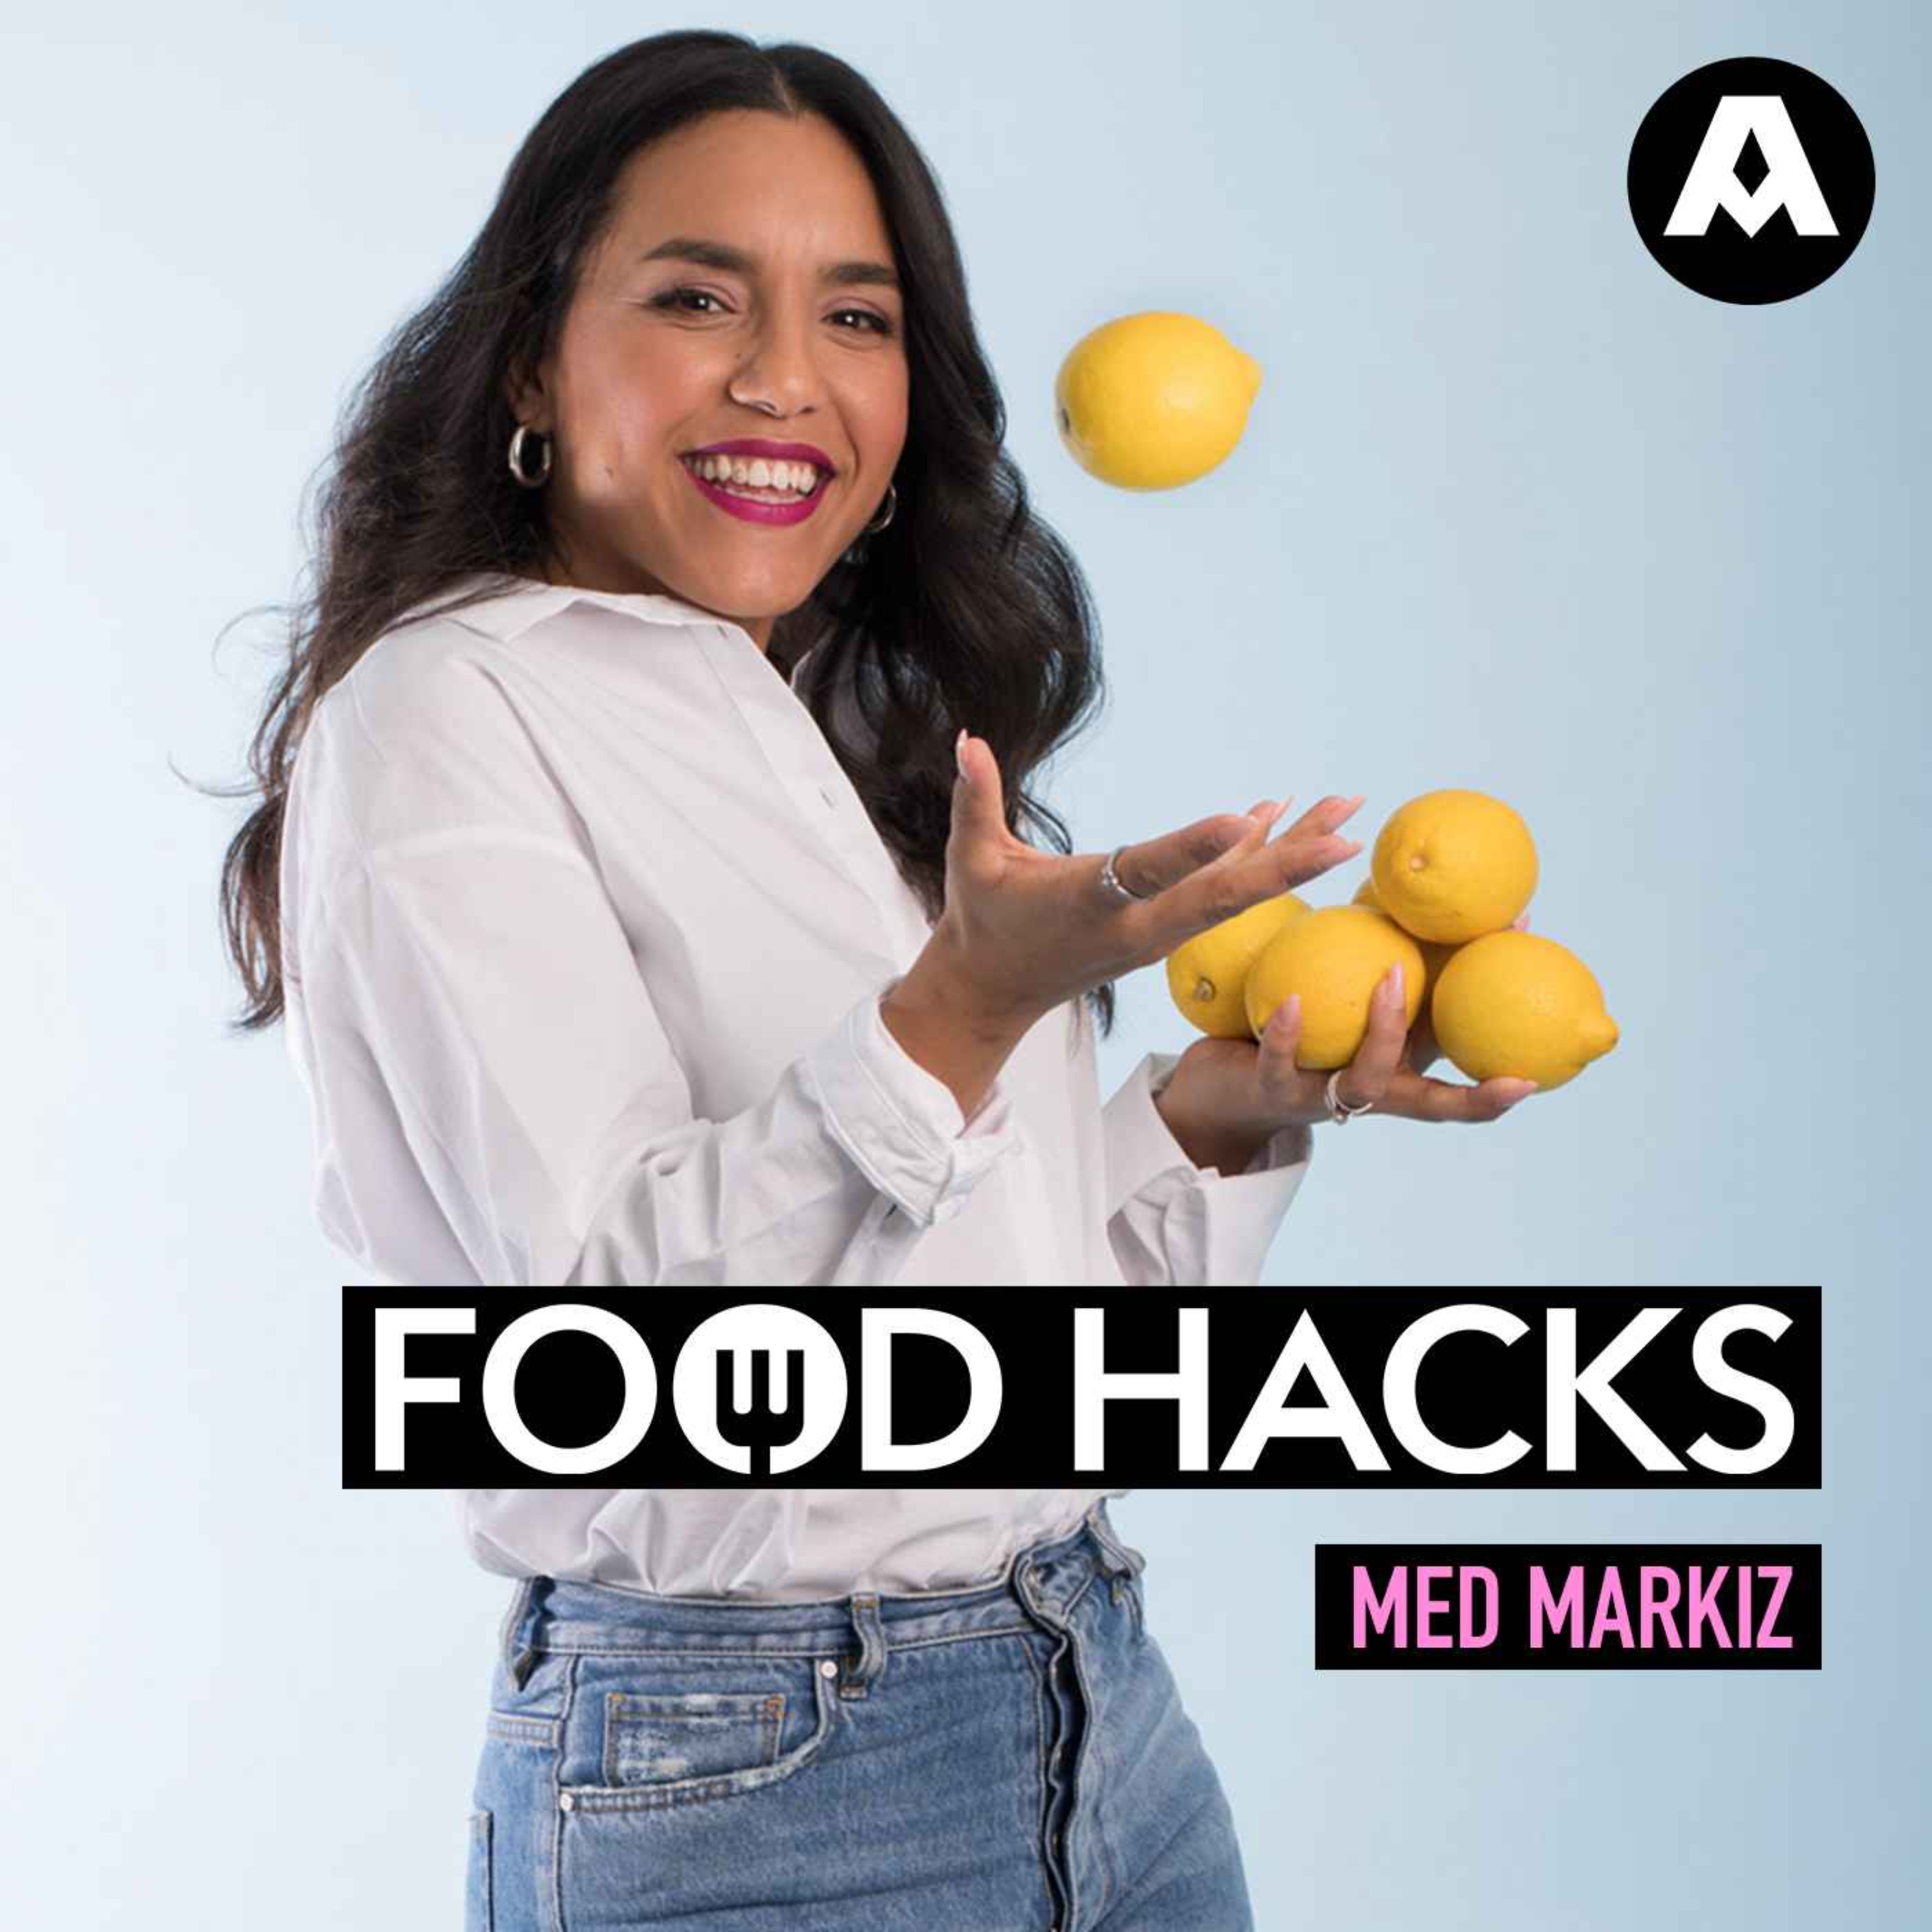 Food hacks: Så lyckas du med din Rub & glaze!